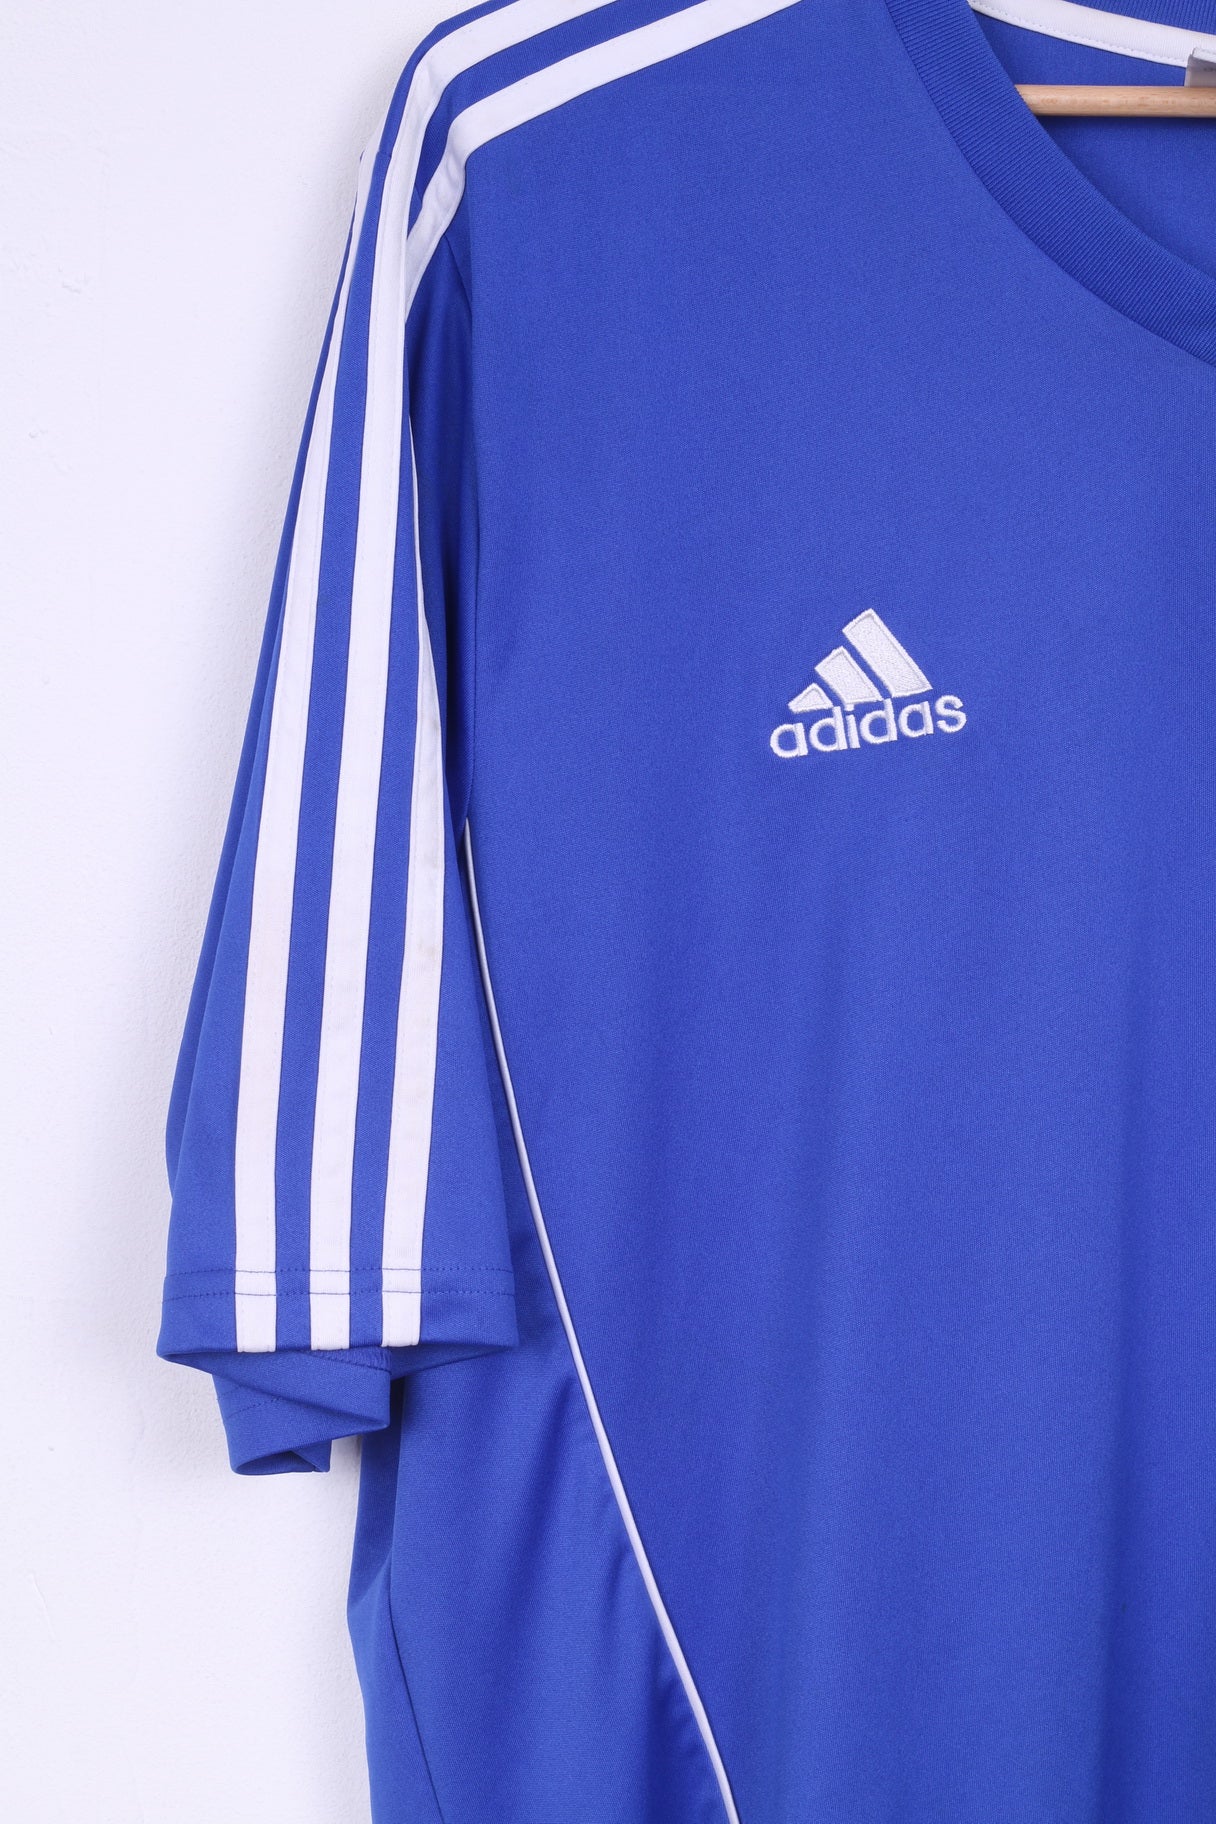 Adidas Mens XL Jersey Blue Shirt Sport Trening Top